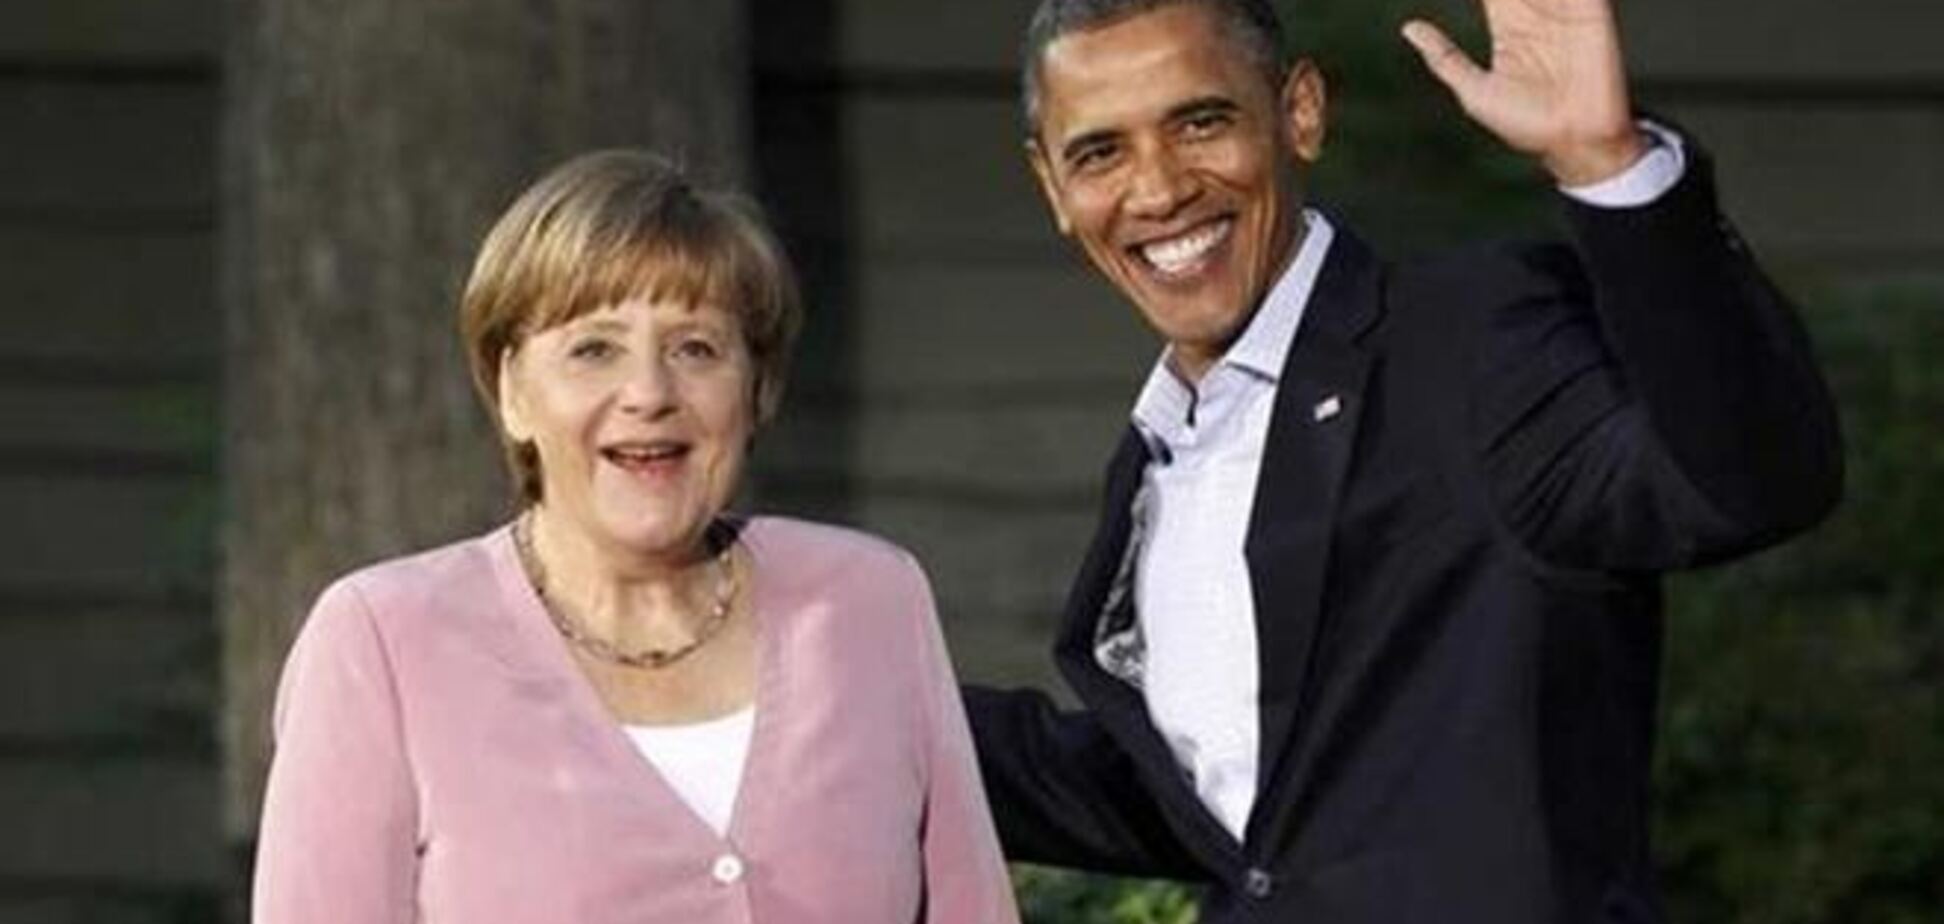 АНБ: Обама не знал о прослушке Меркель